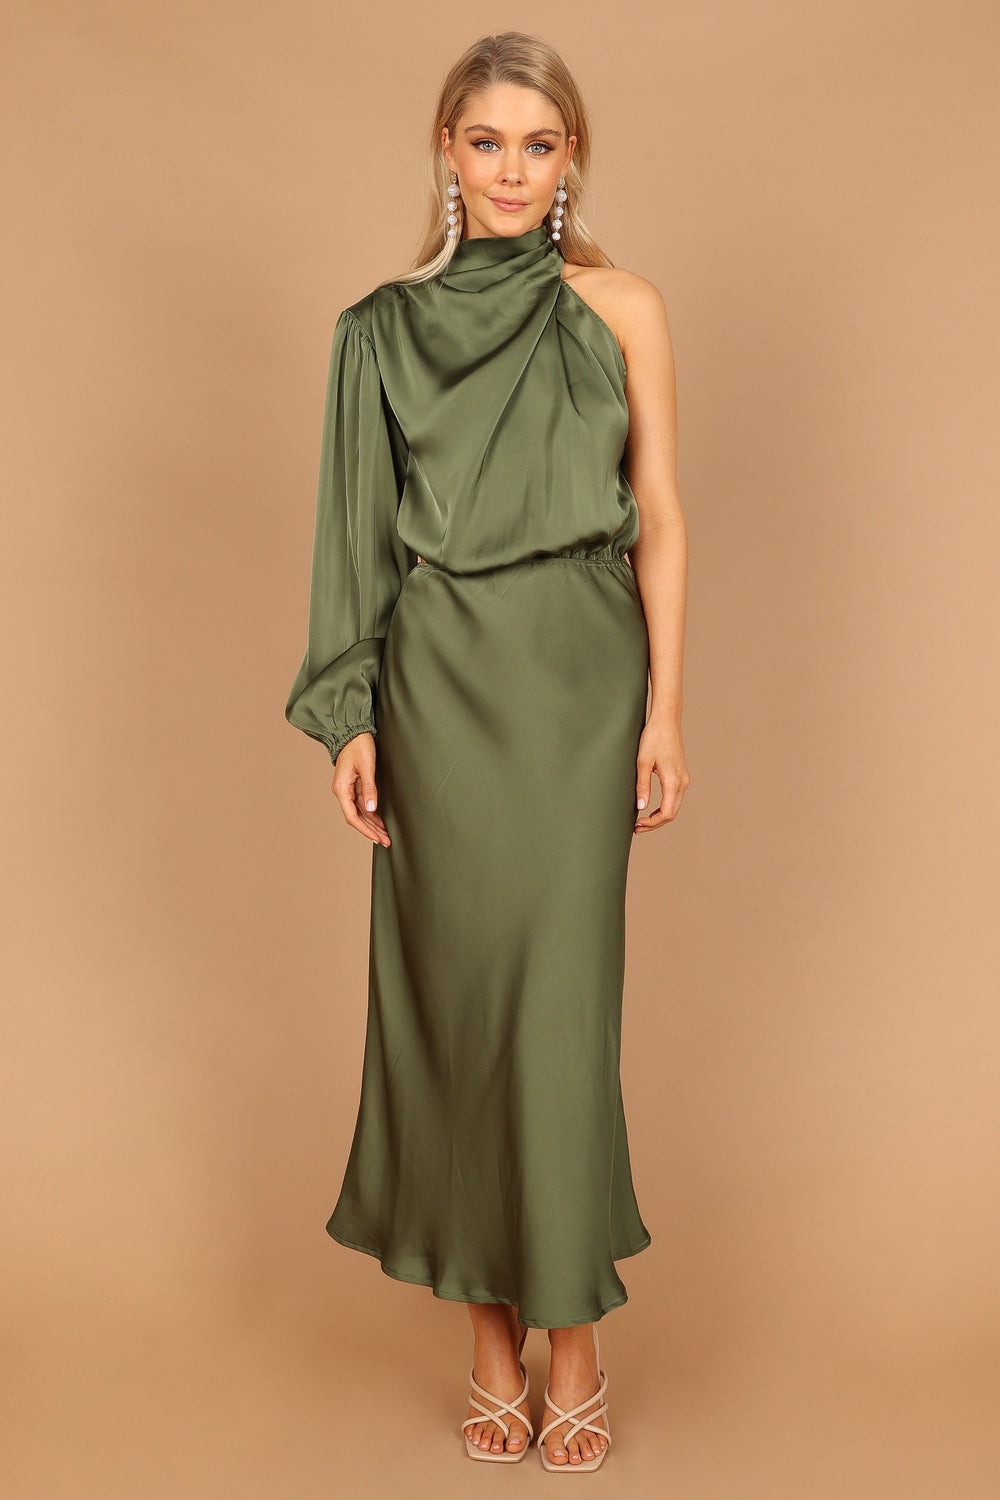 Amelie One Shoulder Midi Dress - Olive - Petal & Pup USA